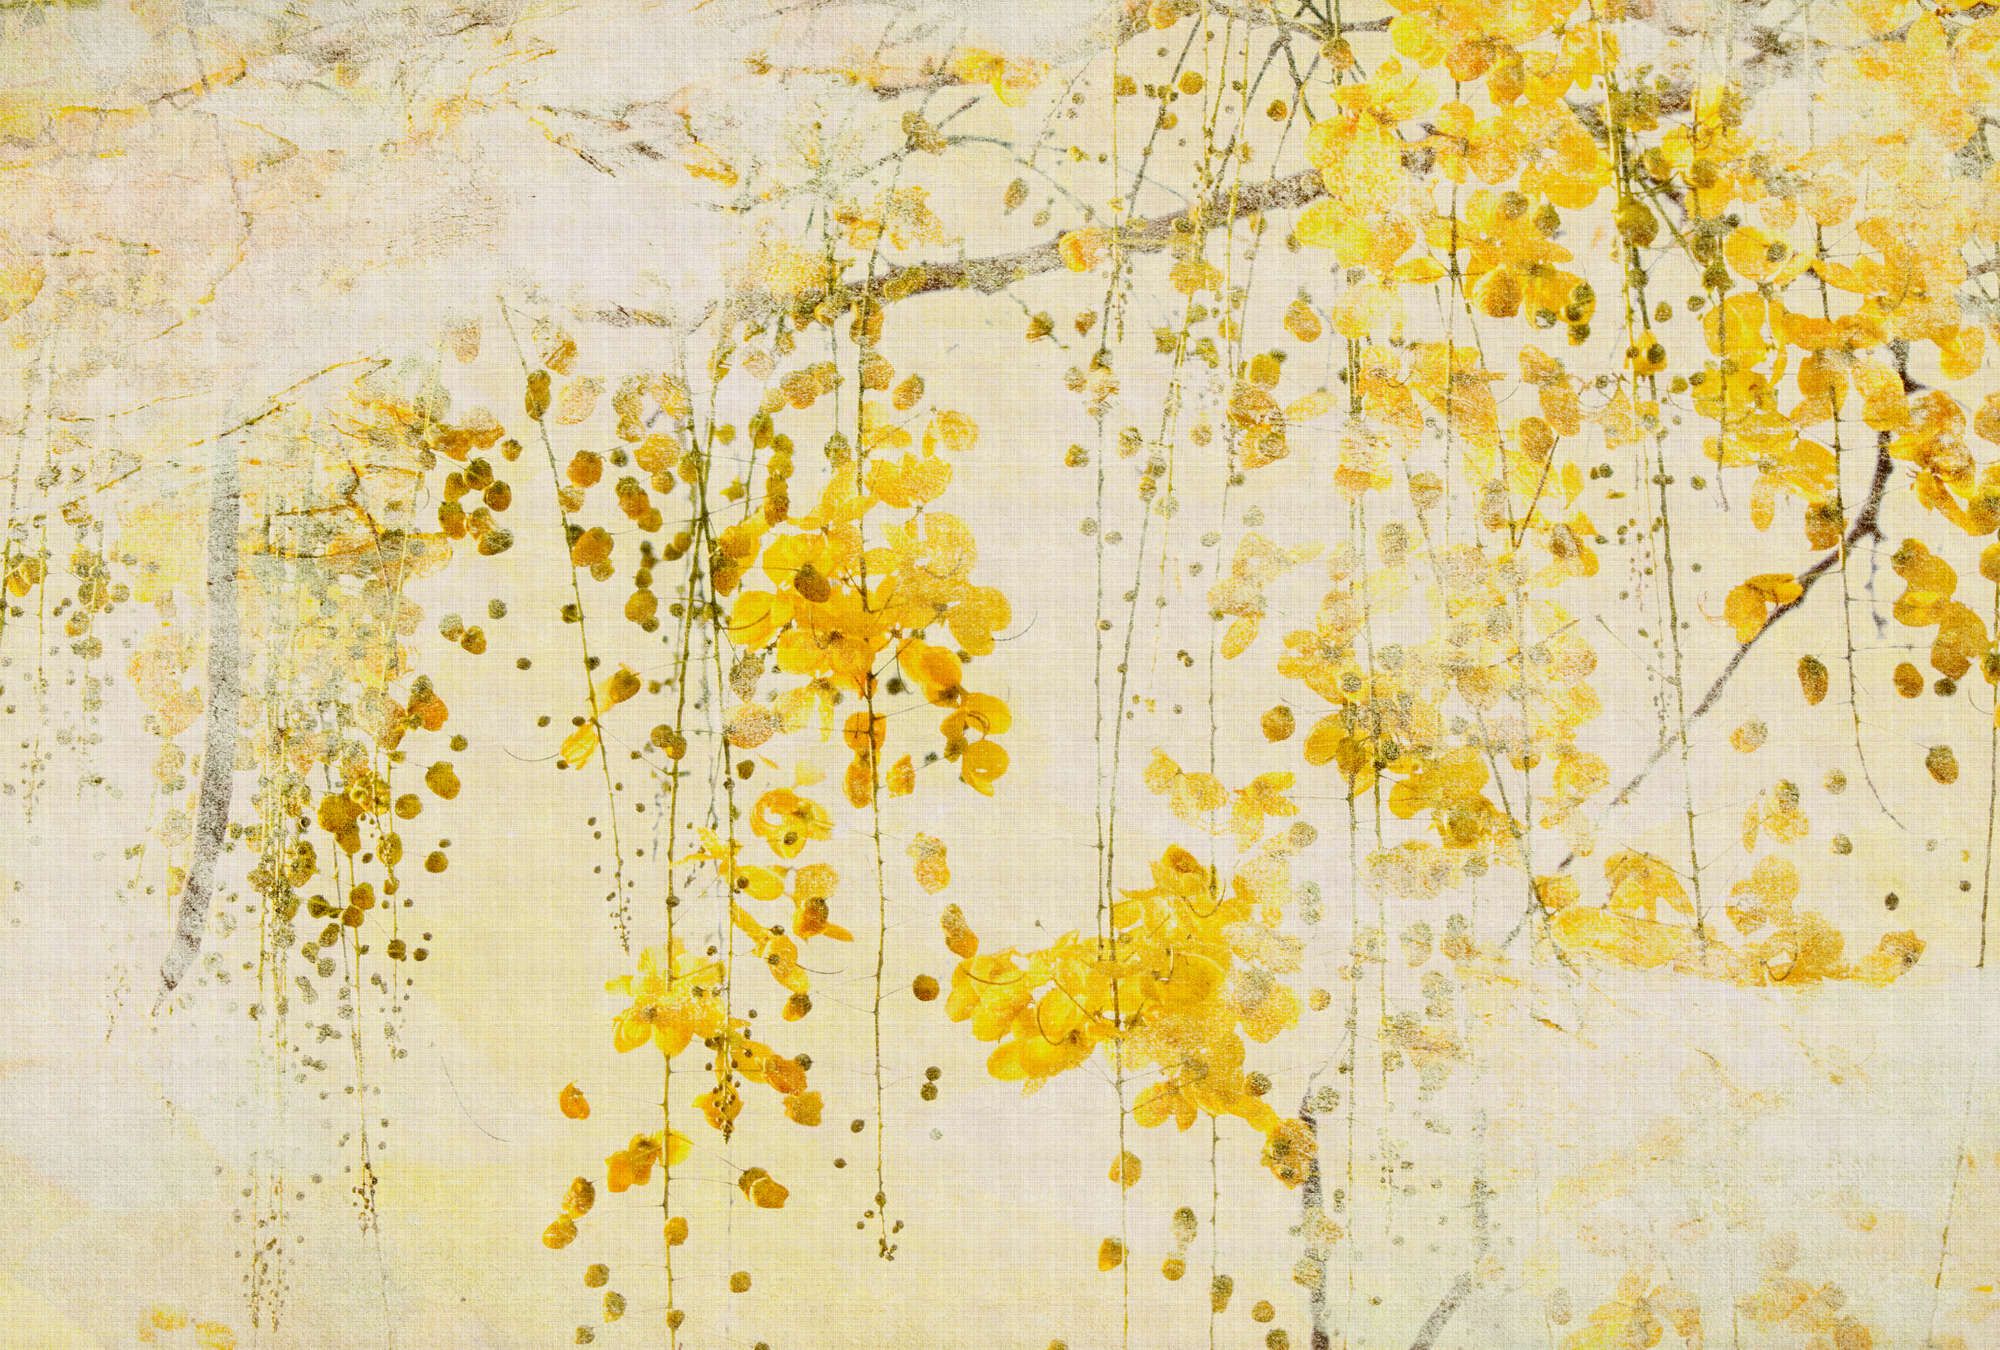             Fotomural »taiyo« - Guirnalda de flores con estructura de lino en el fondo - Amarillo | Tela no tejida lisa, ligeramente nacarada y brillante
        